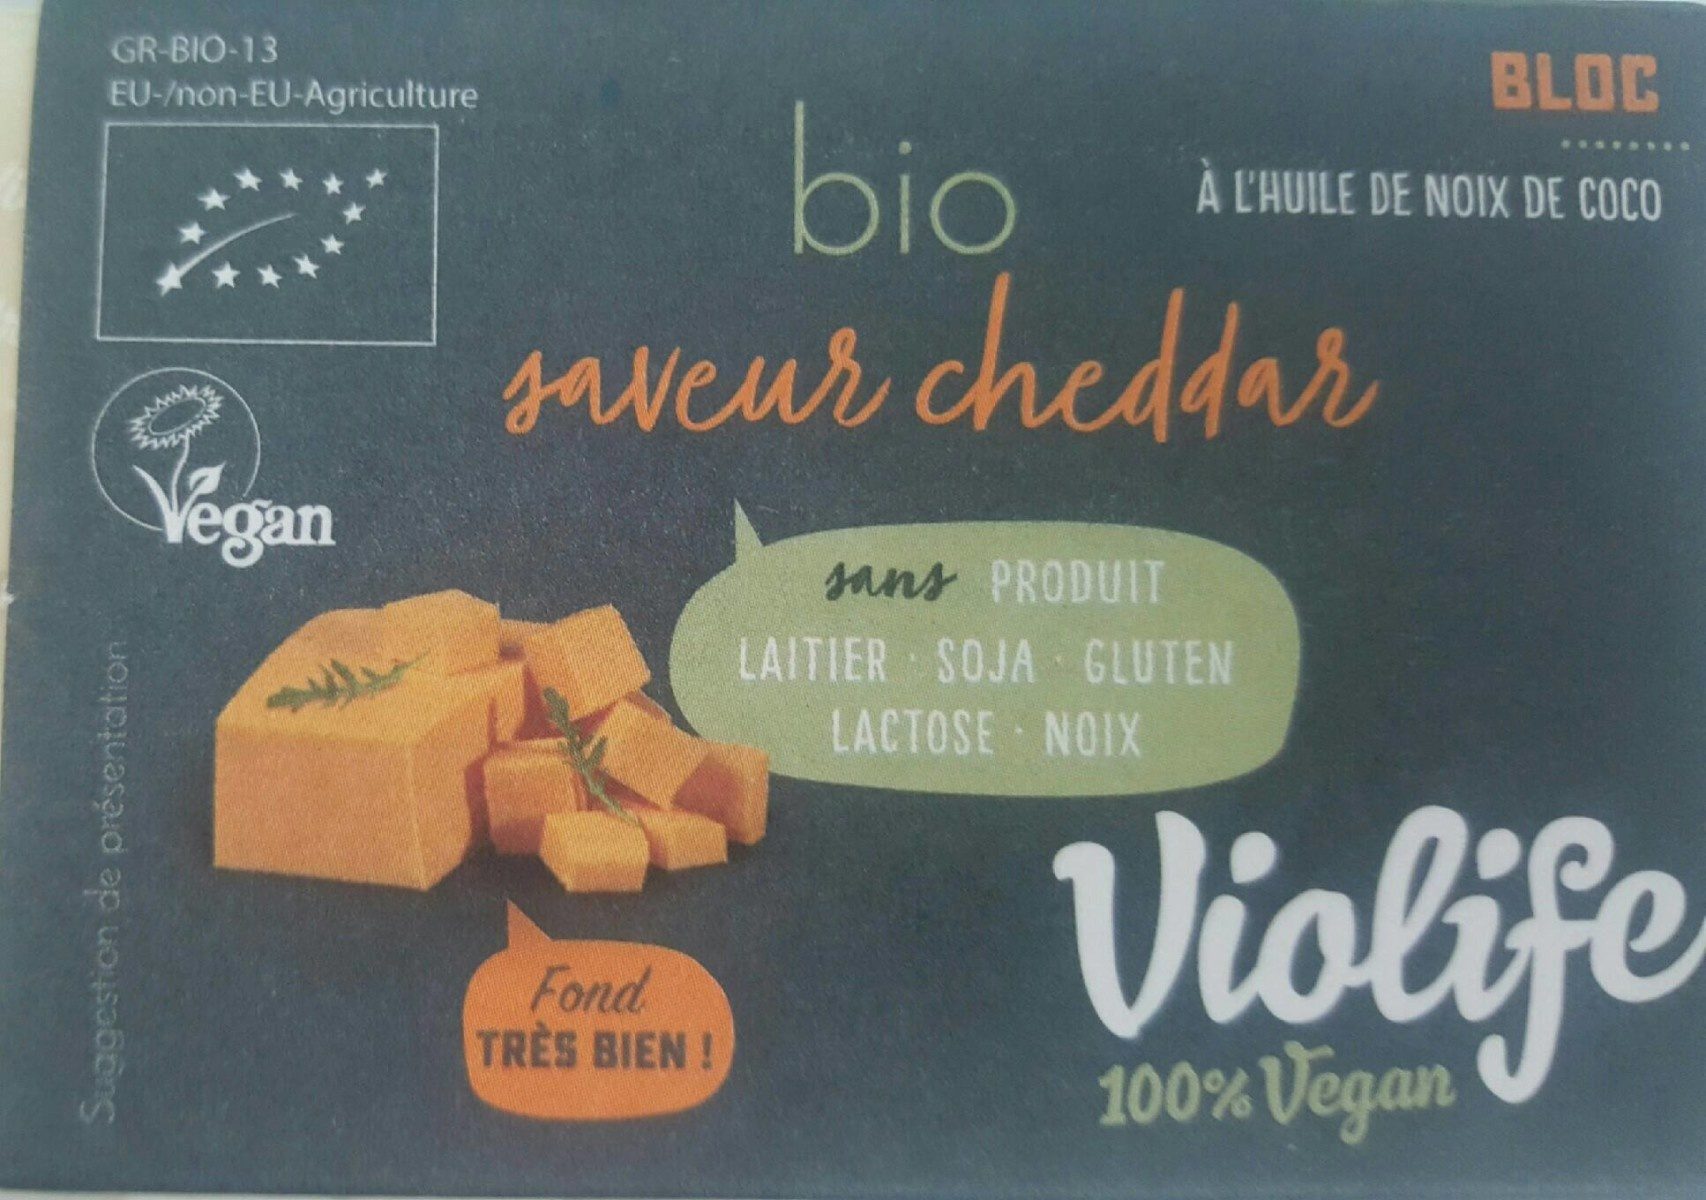 Bloc bio saveur cheddar - Producte - fr